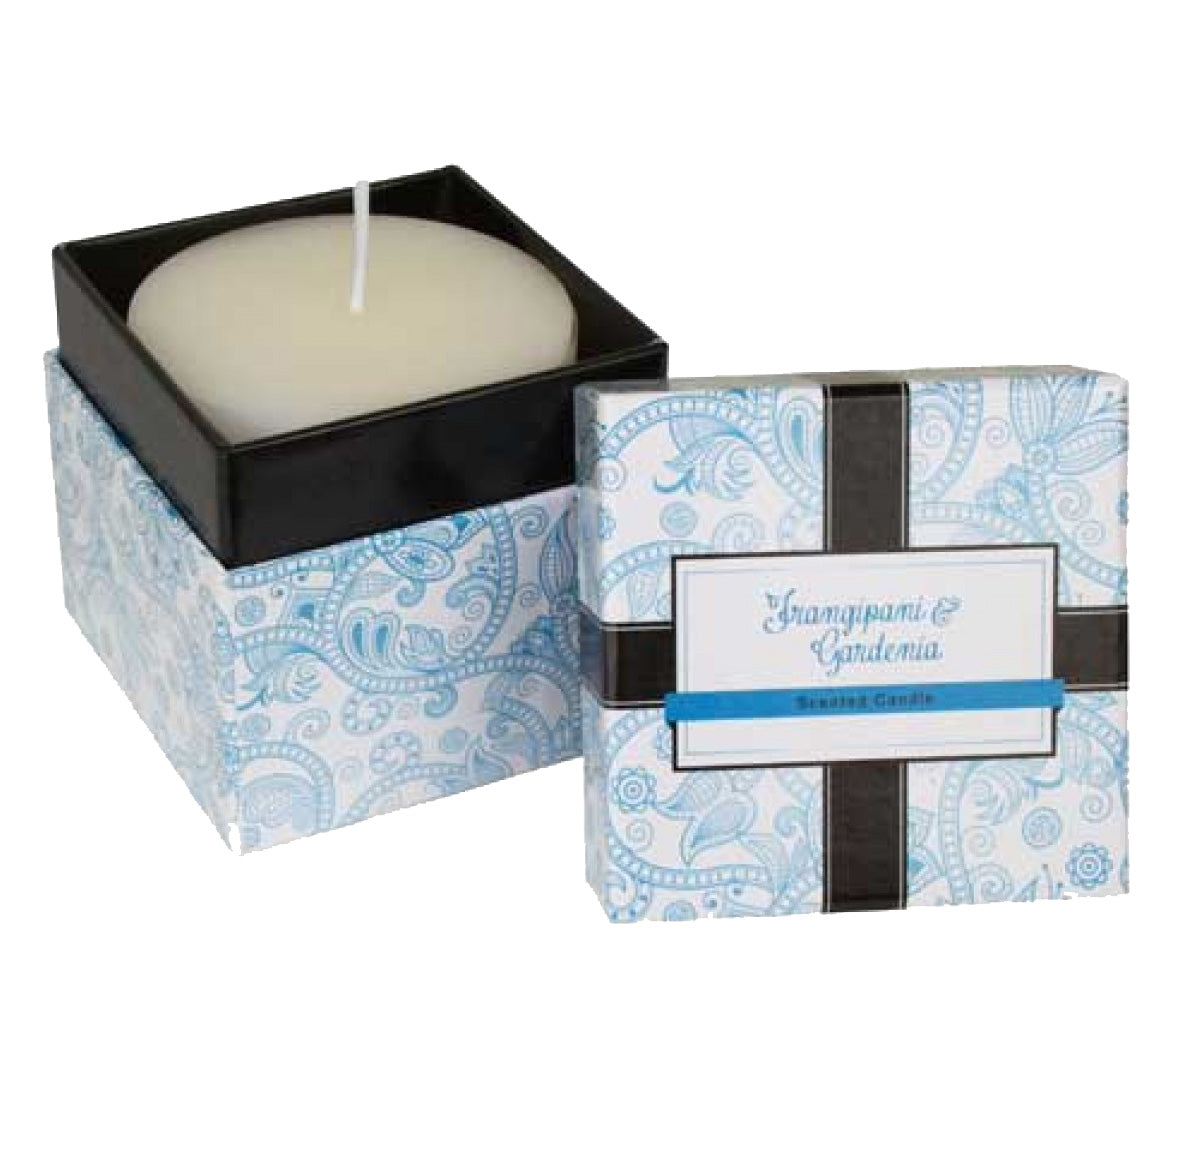 Frangipani & Gardenia Boxed Candle | mishLifestyle